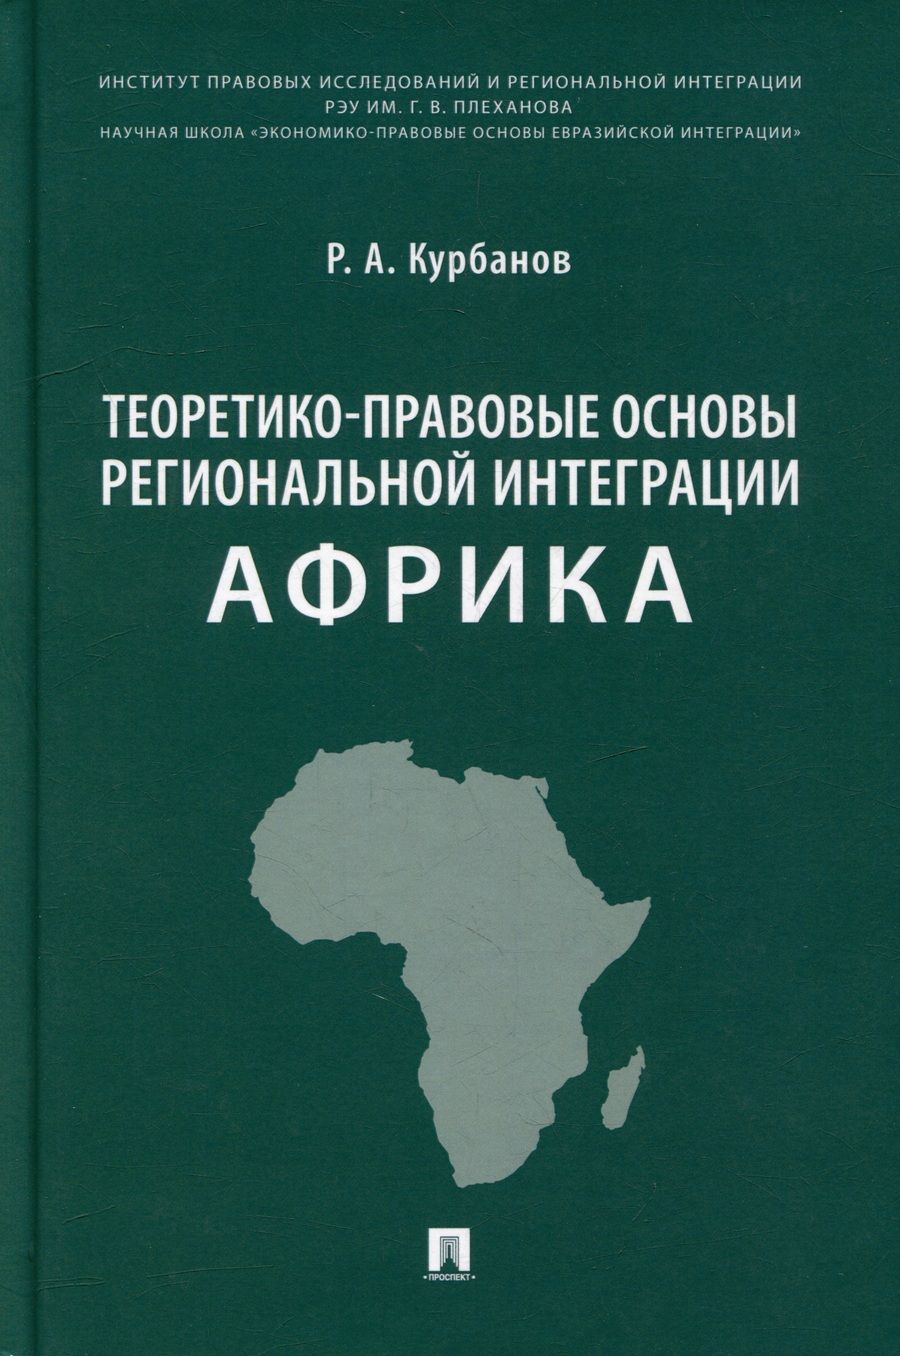 Обложка книги "Курбанов: Теоретико-правовые основы региональной интеграции. Африка. Научно-энциклопедическое издание"